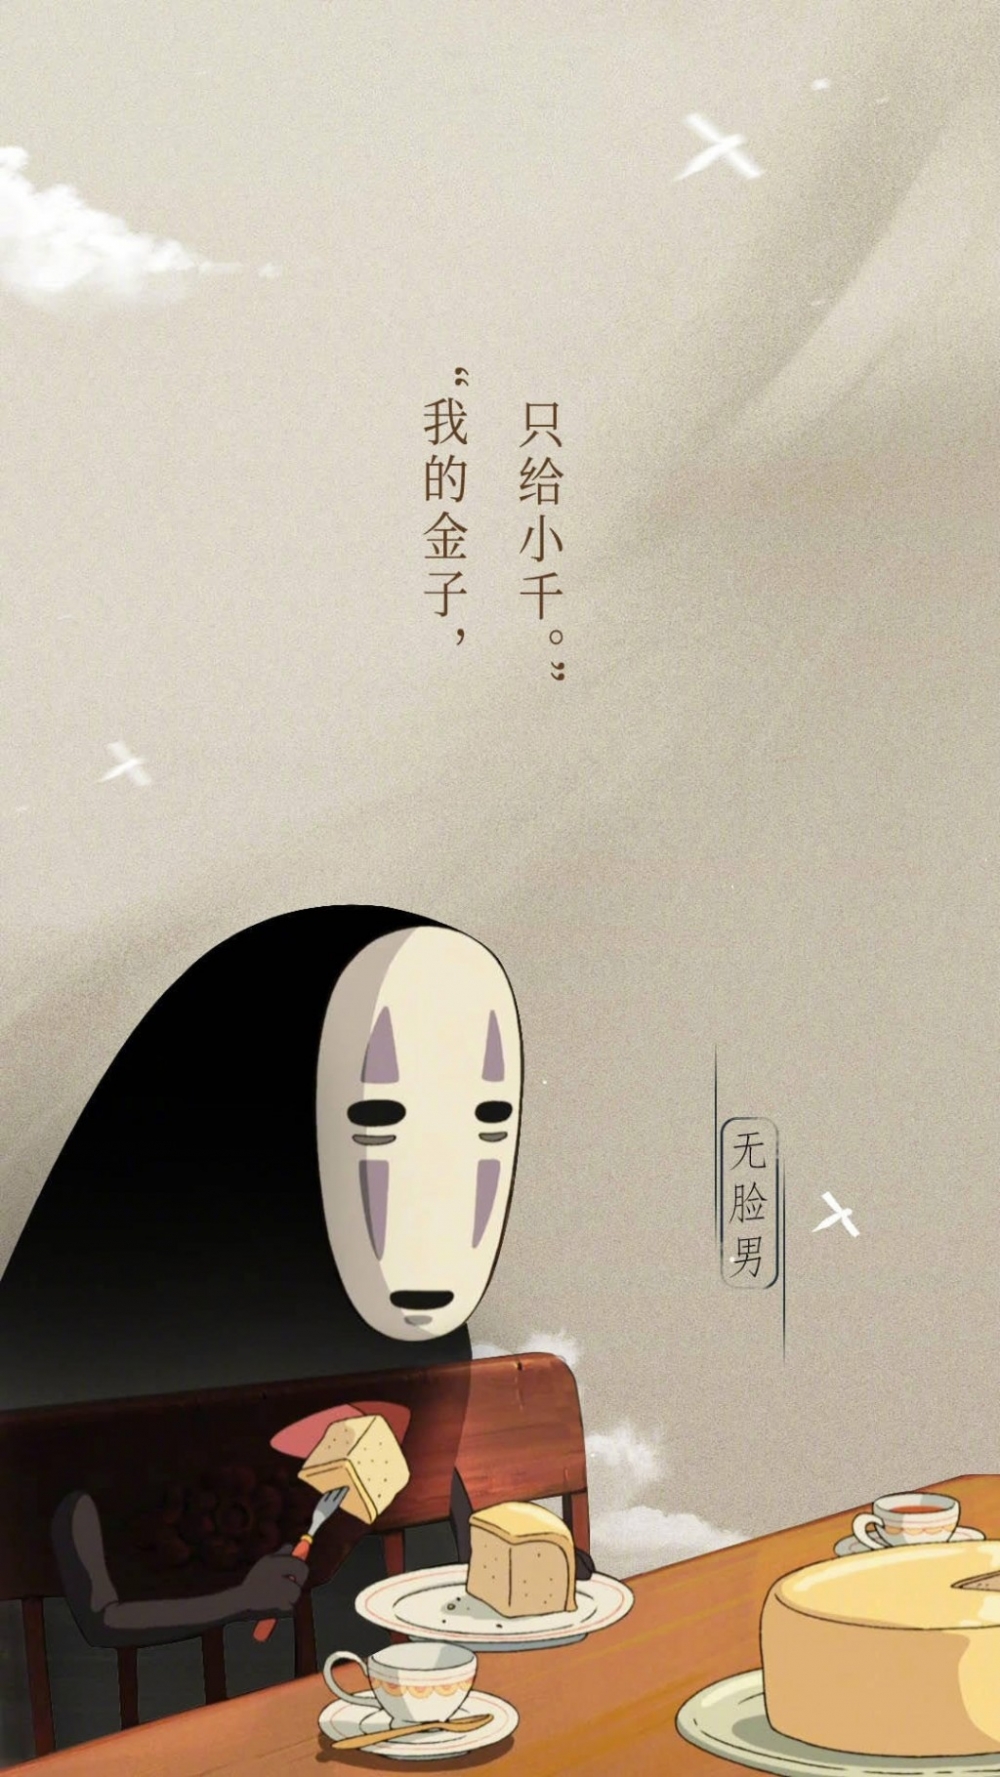 日本动漫电影千与千寻经典台词文字语录图手机高清全屏壁纸